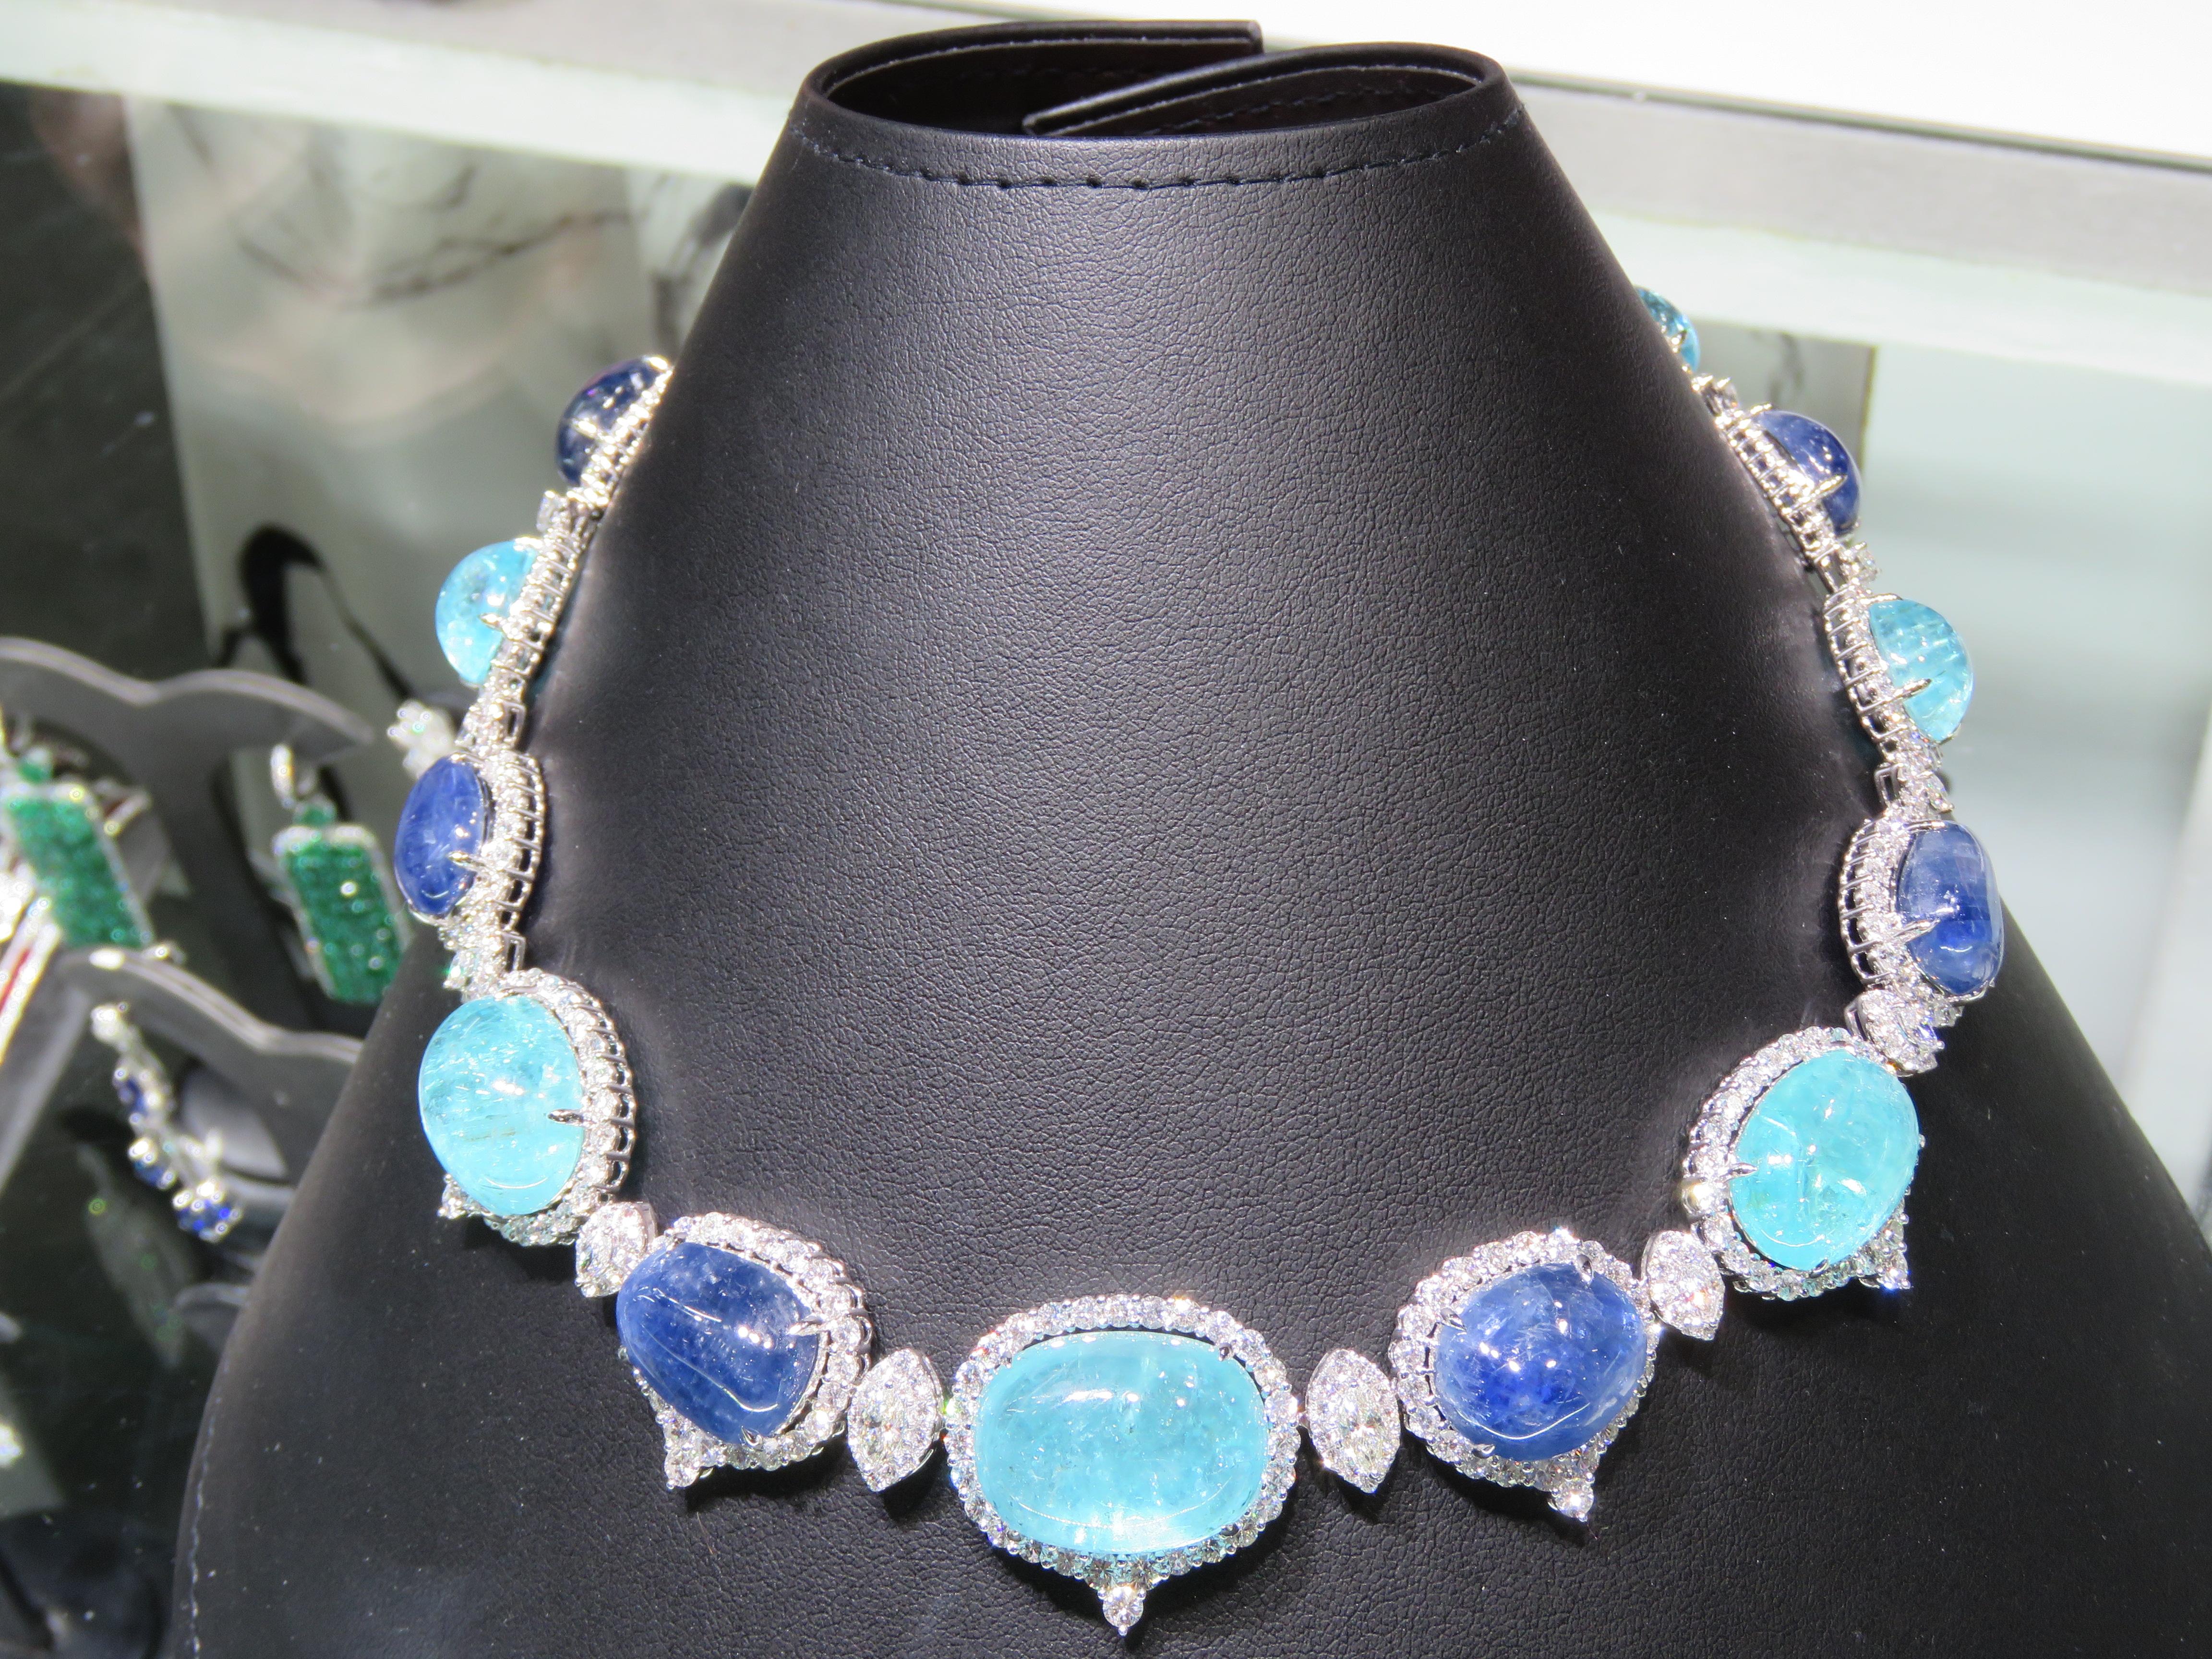 Magnifique collier important en or blanc 18KT à diamant Paraiba et saphir bleu naturel. Le collier est composé d'un Paraiba magnifiquement serti, orné de diamants ronds et taillés en rose et d'émeraudes rondes ! A.C.C. env. 125CTS !!! Ce magnifique